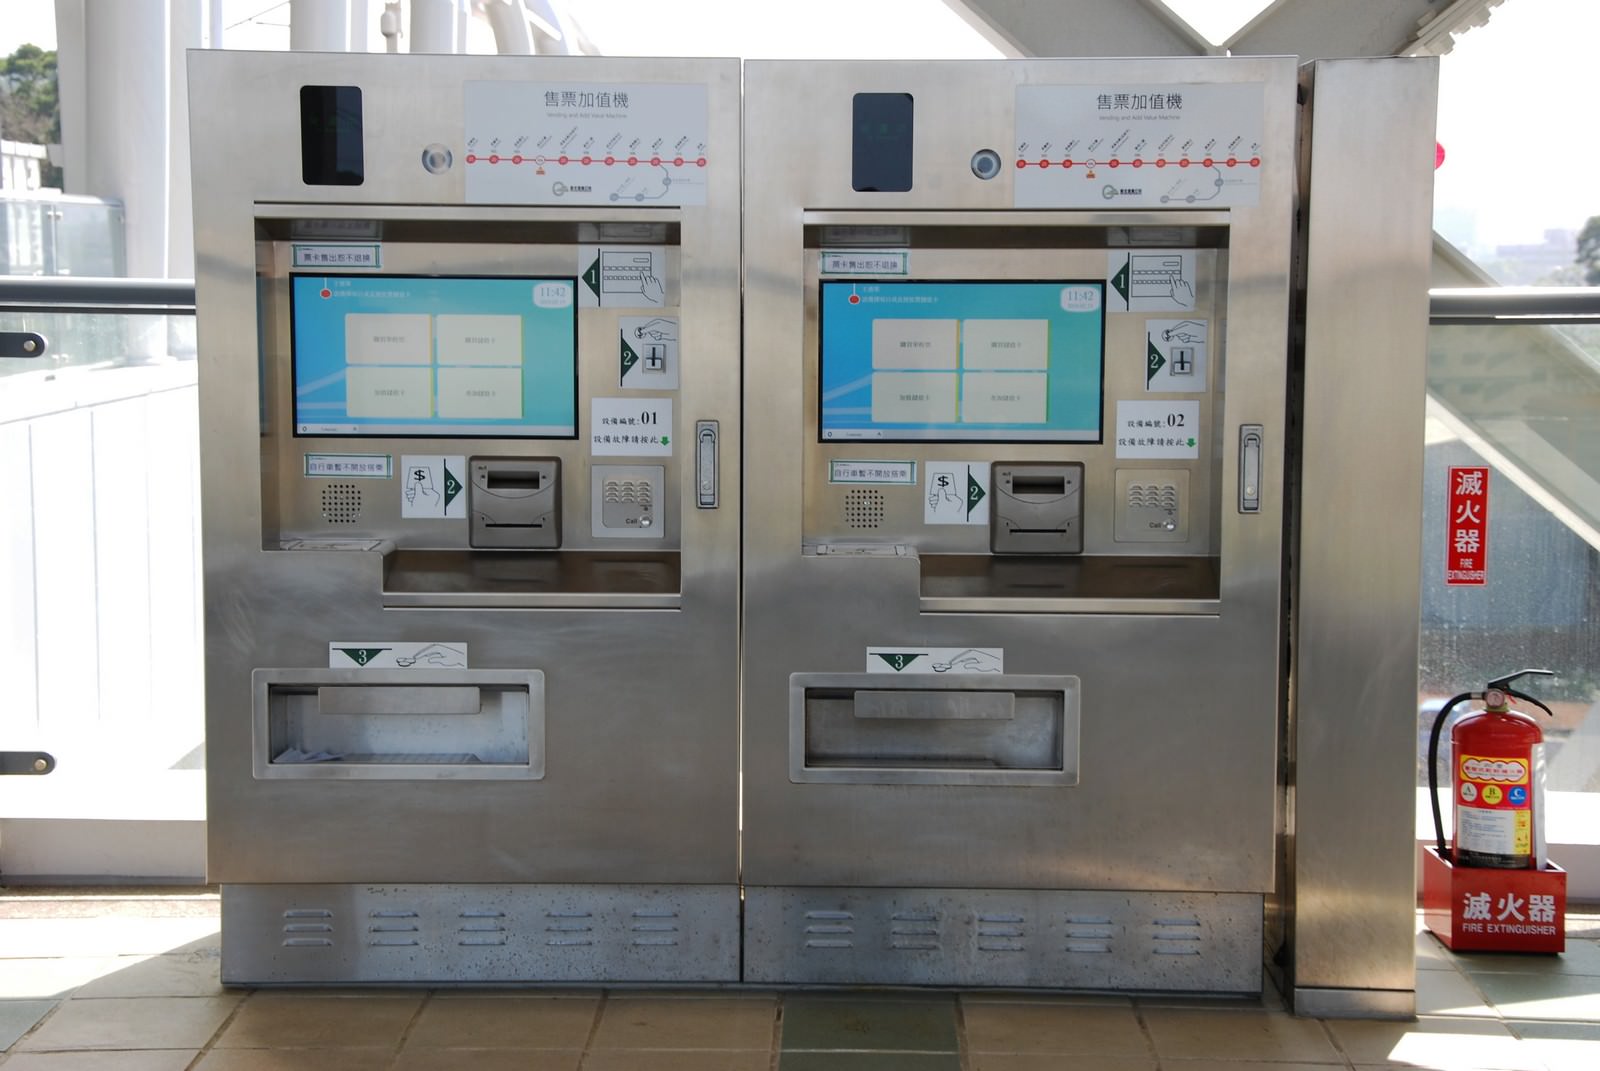 淡海輕軌綠山線, 輕軌淡江大學站, 售票加值機